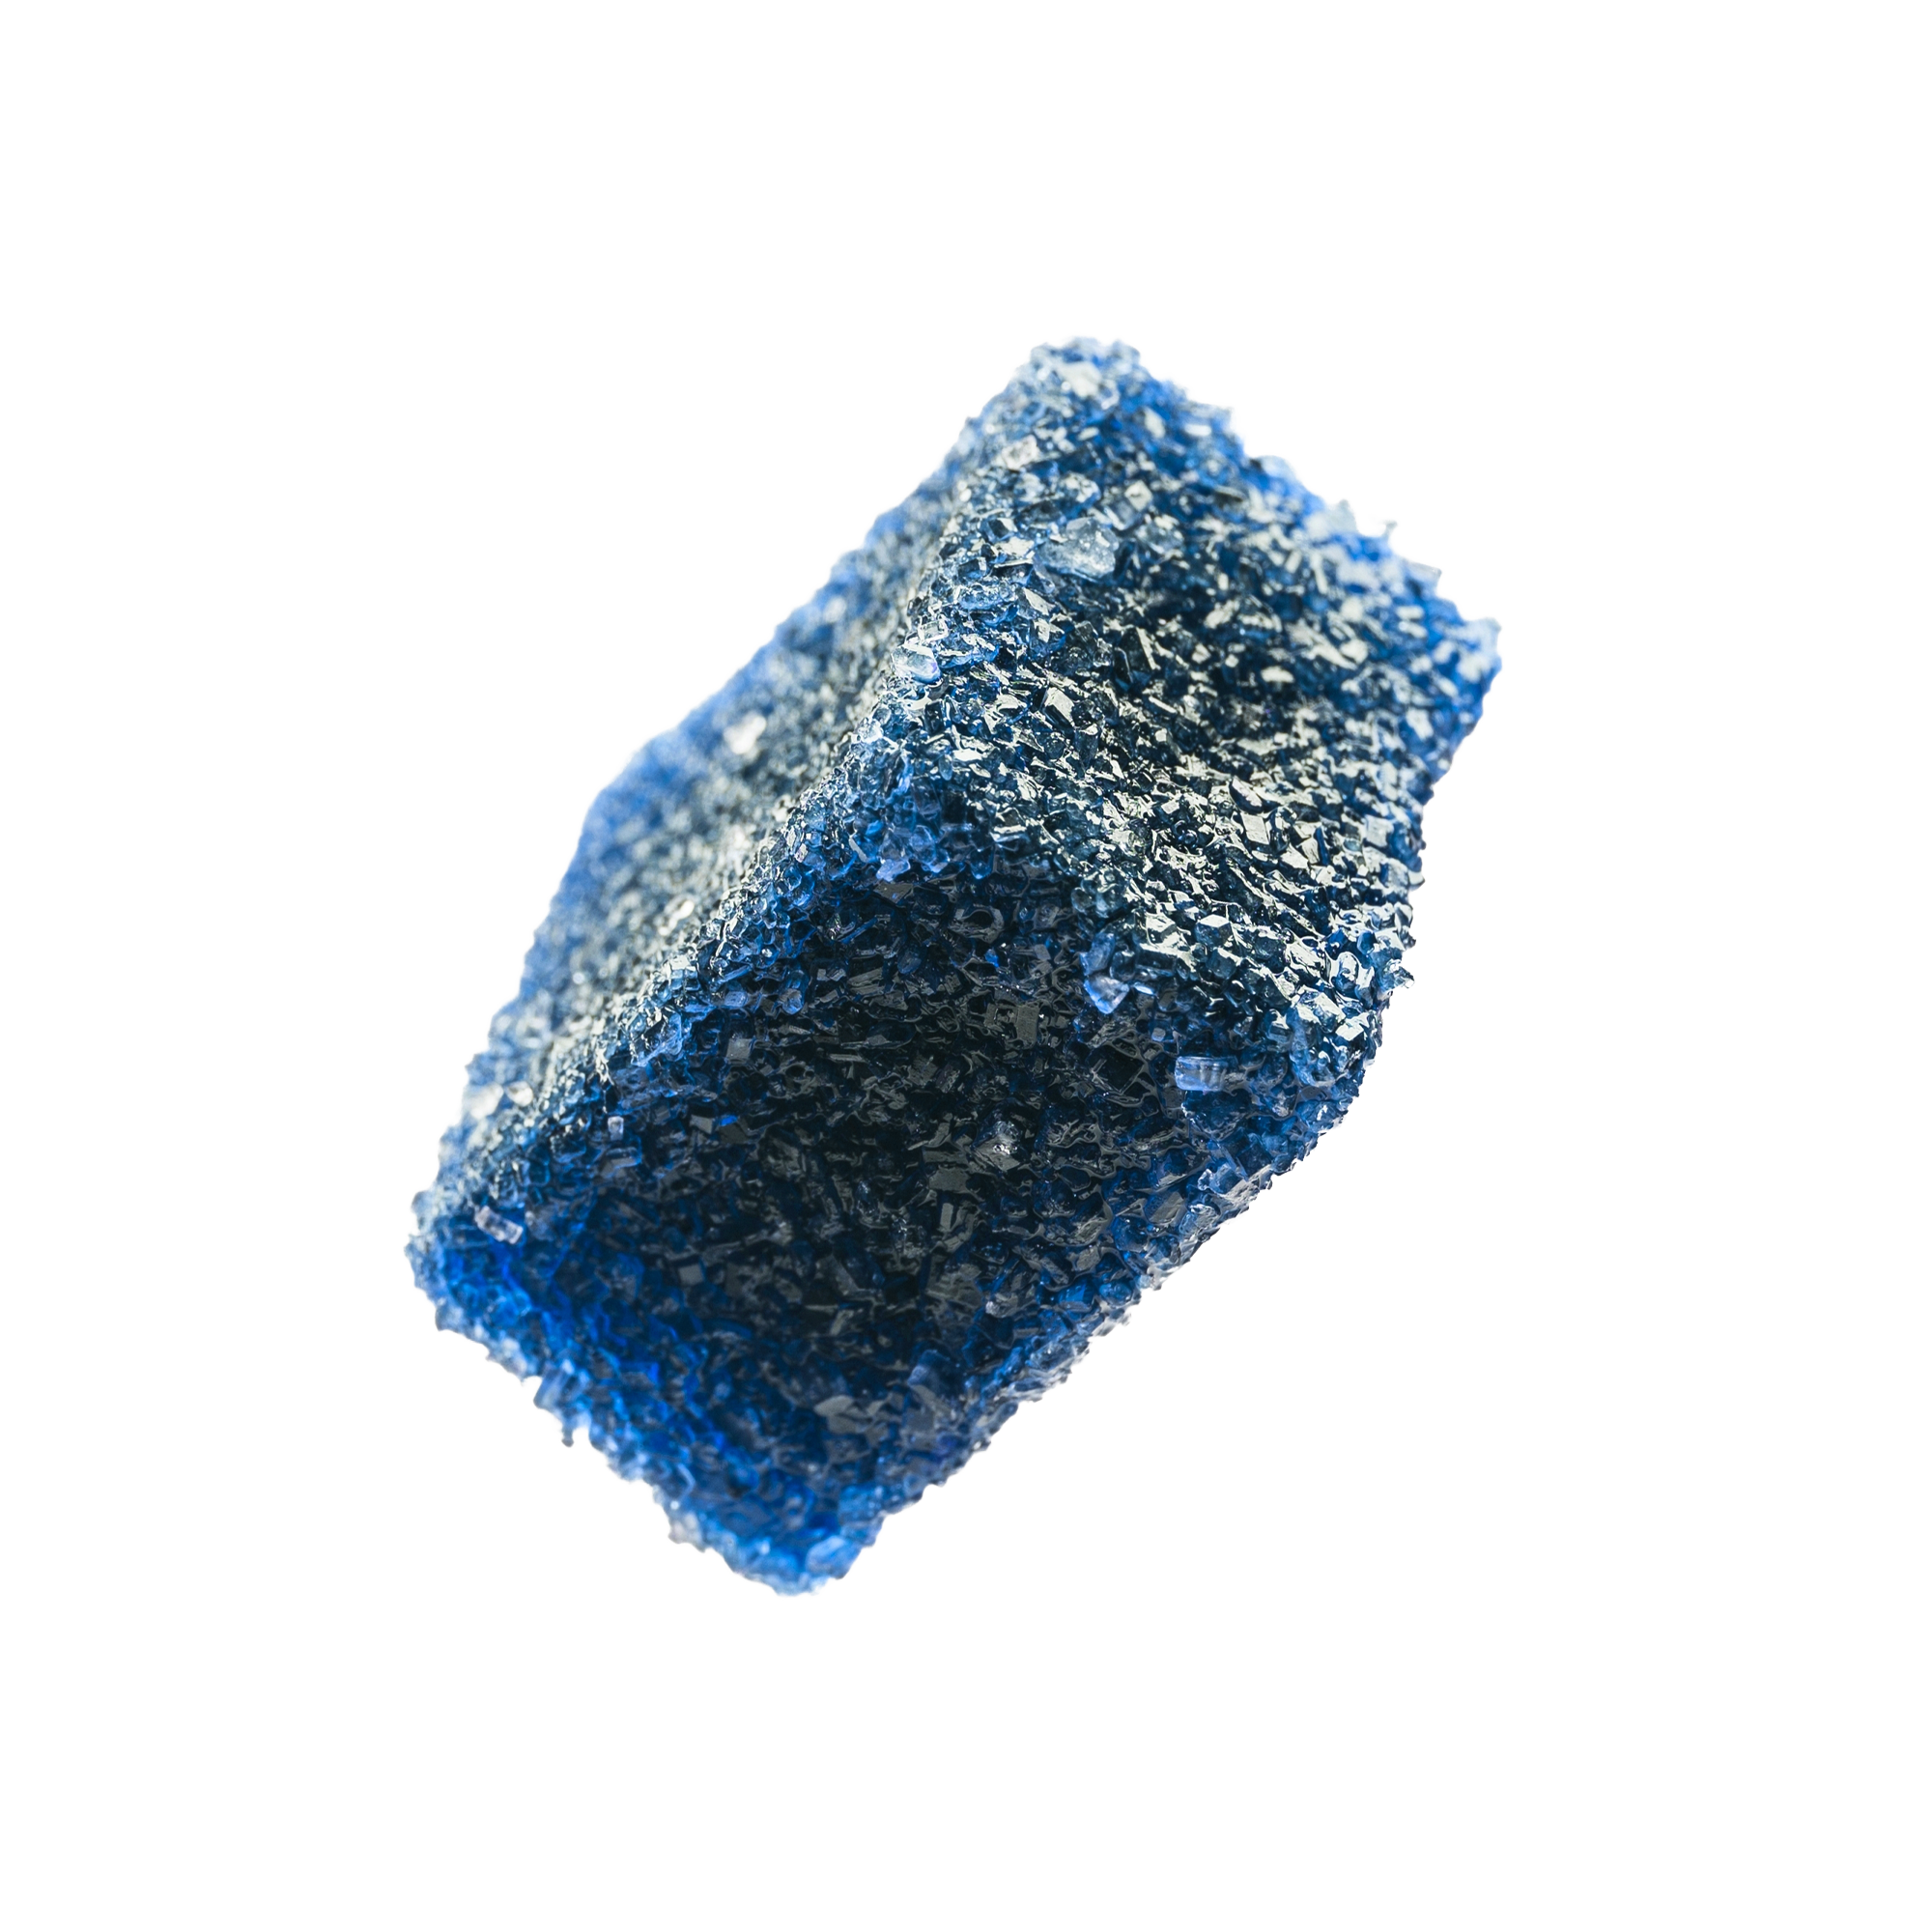 blue gum